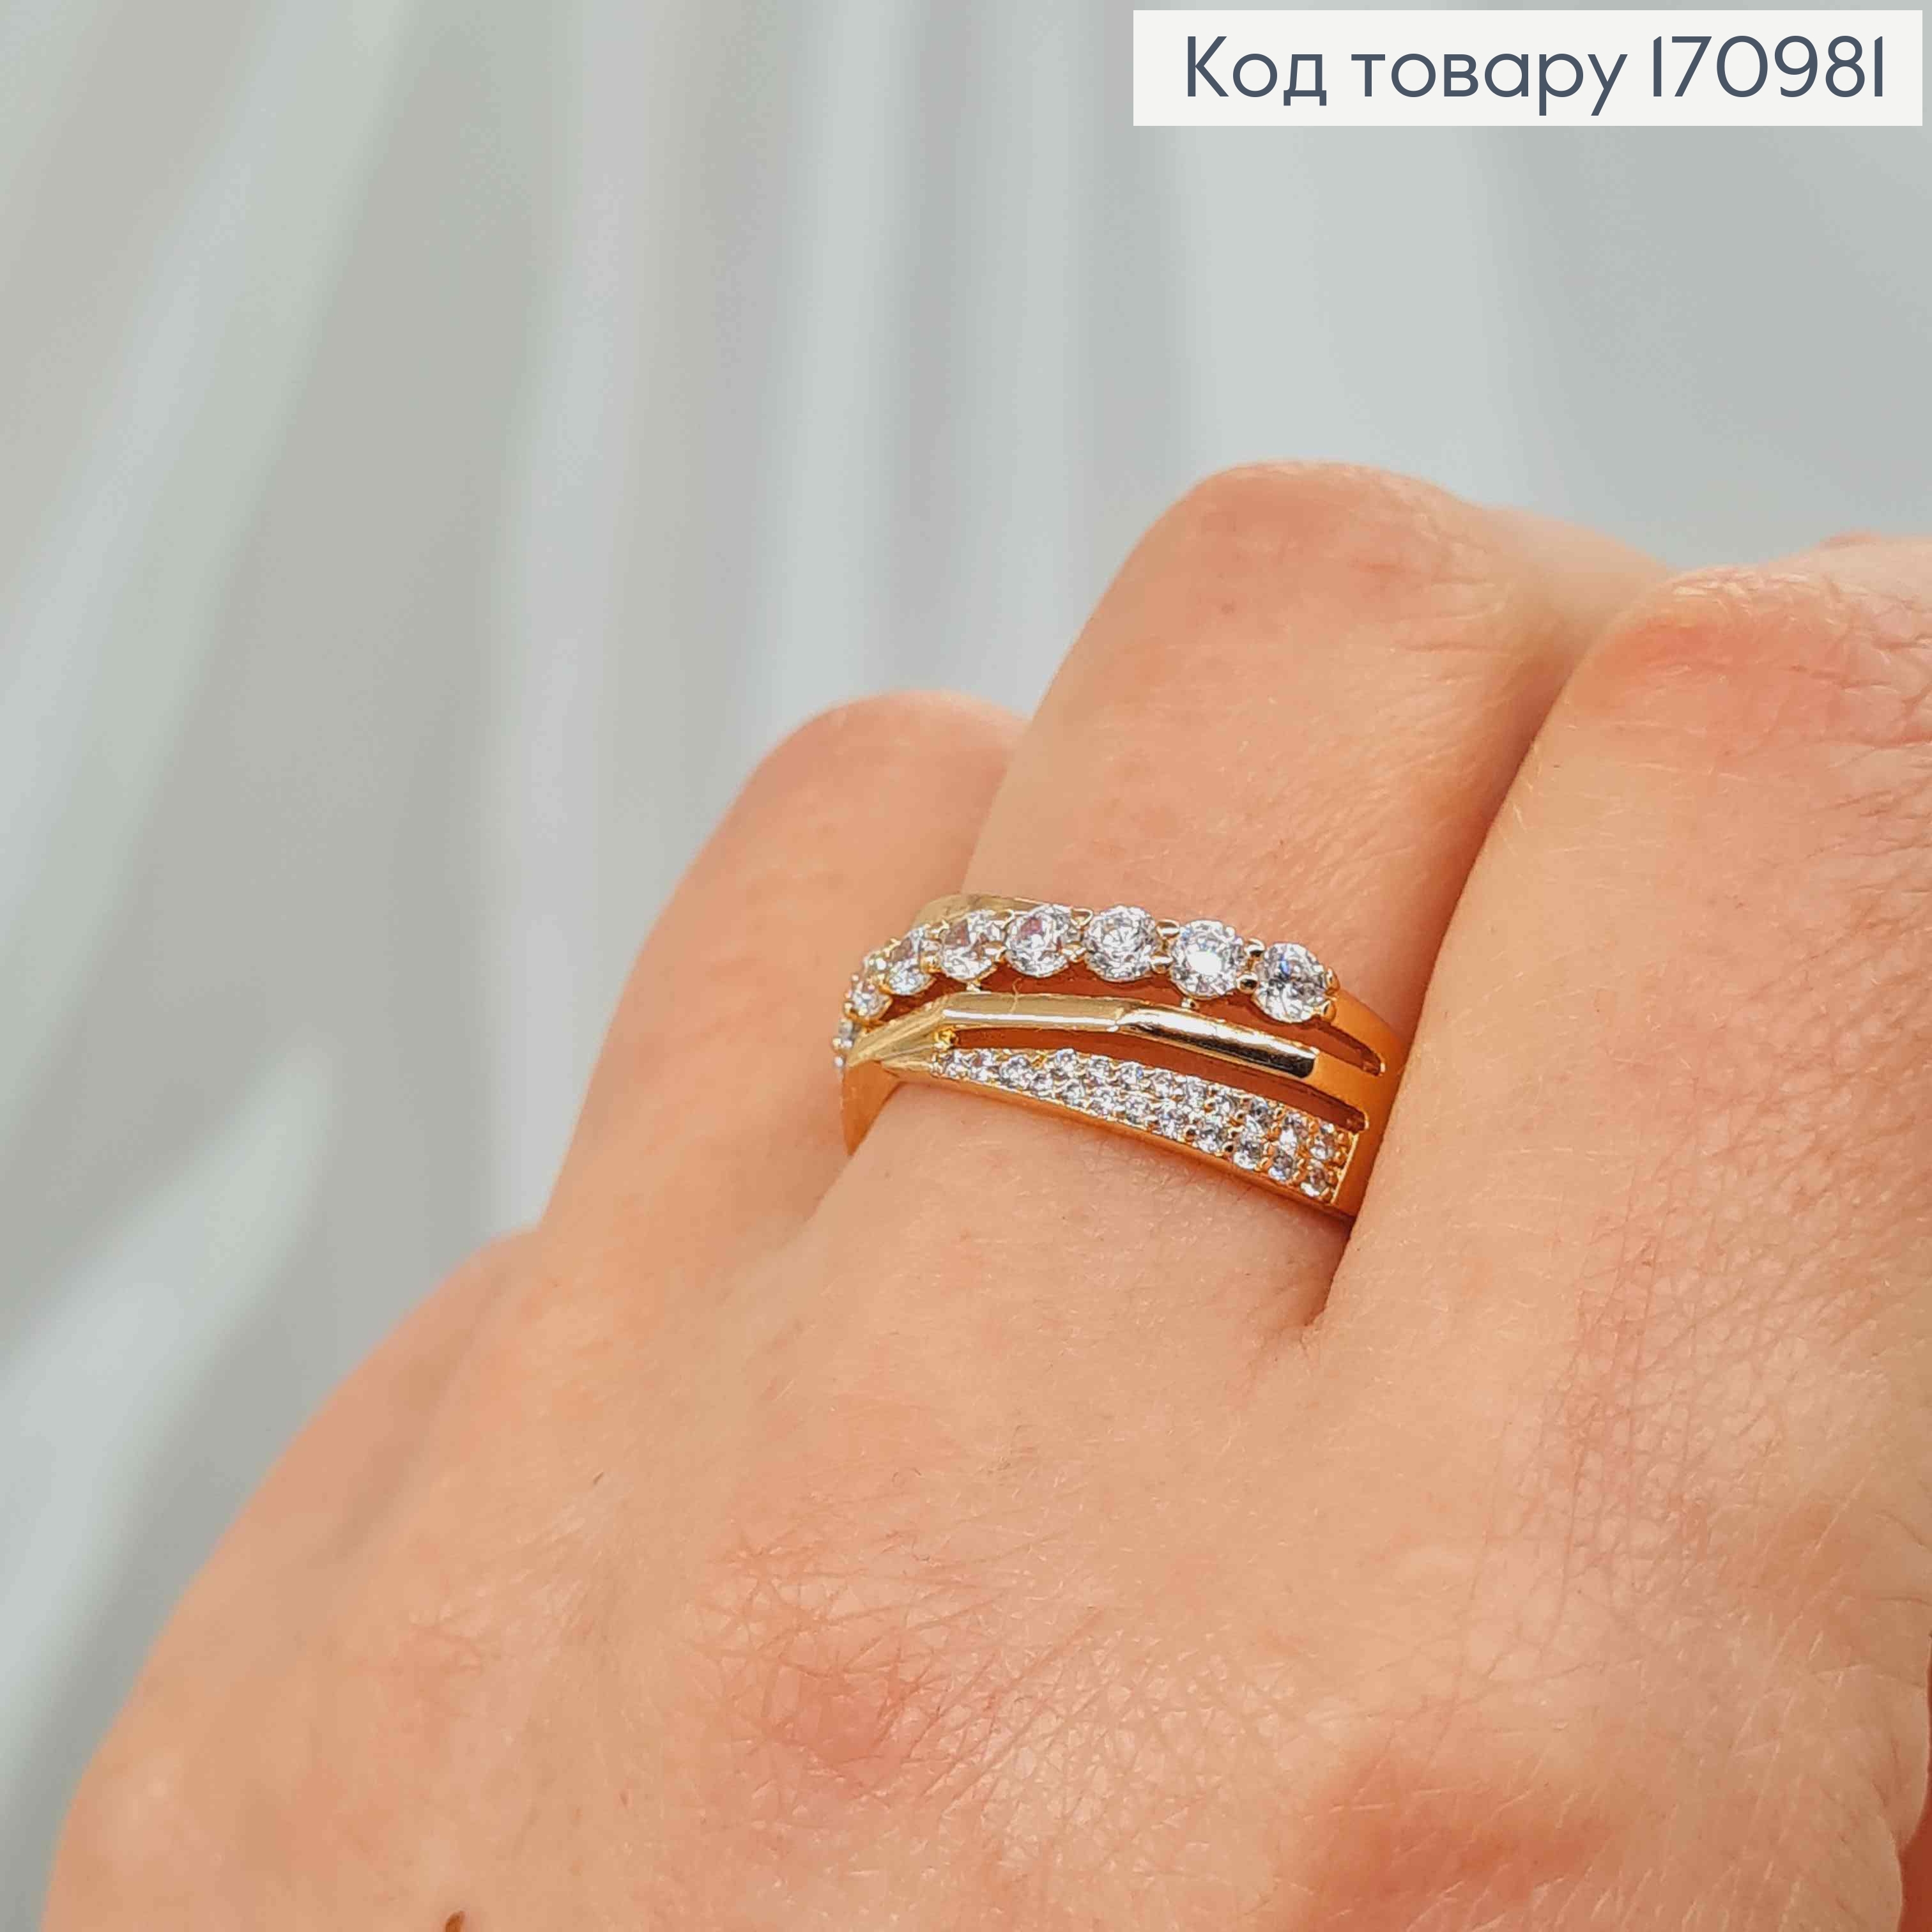 Перстень с разными перепонками и камешками, Xuping 18K 170981 фото 2